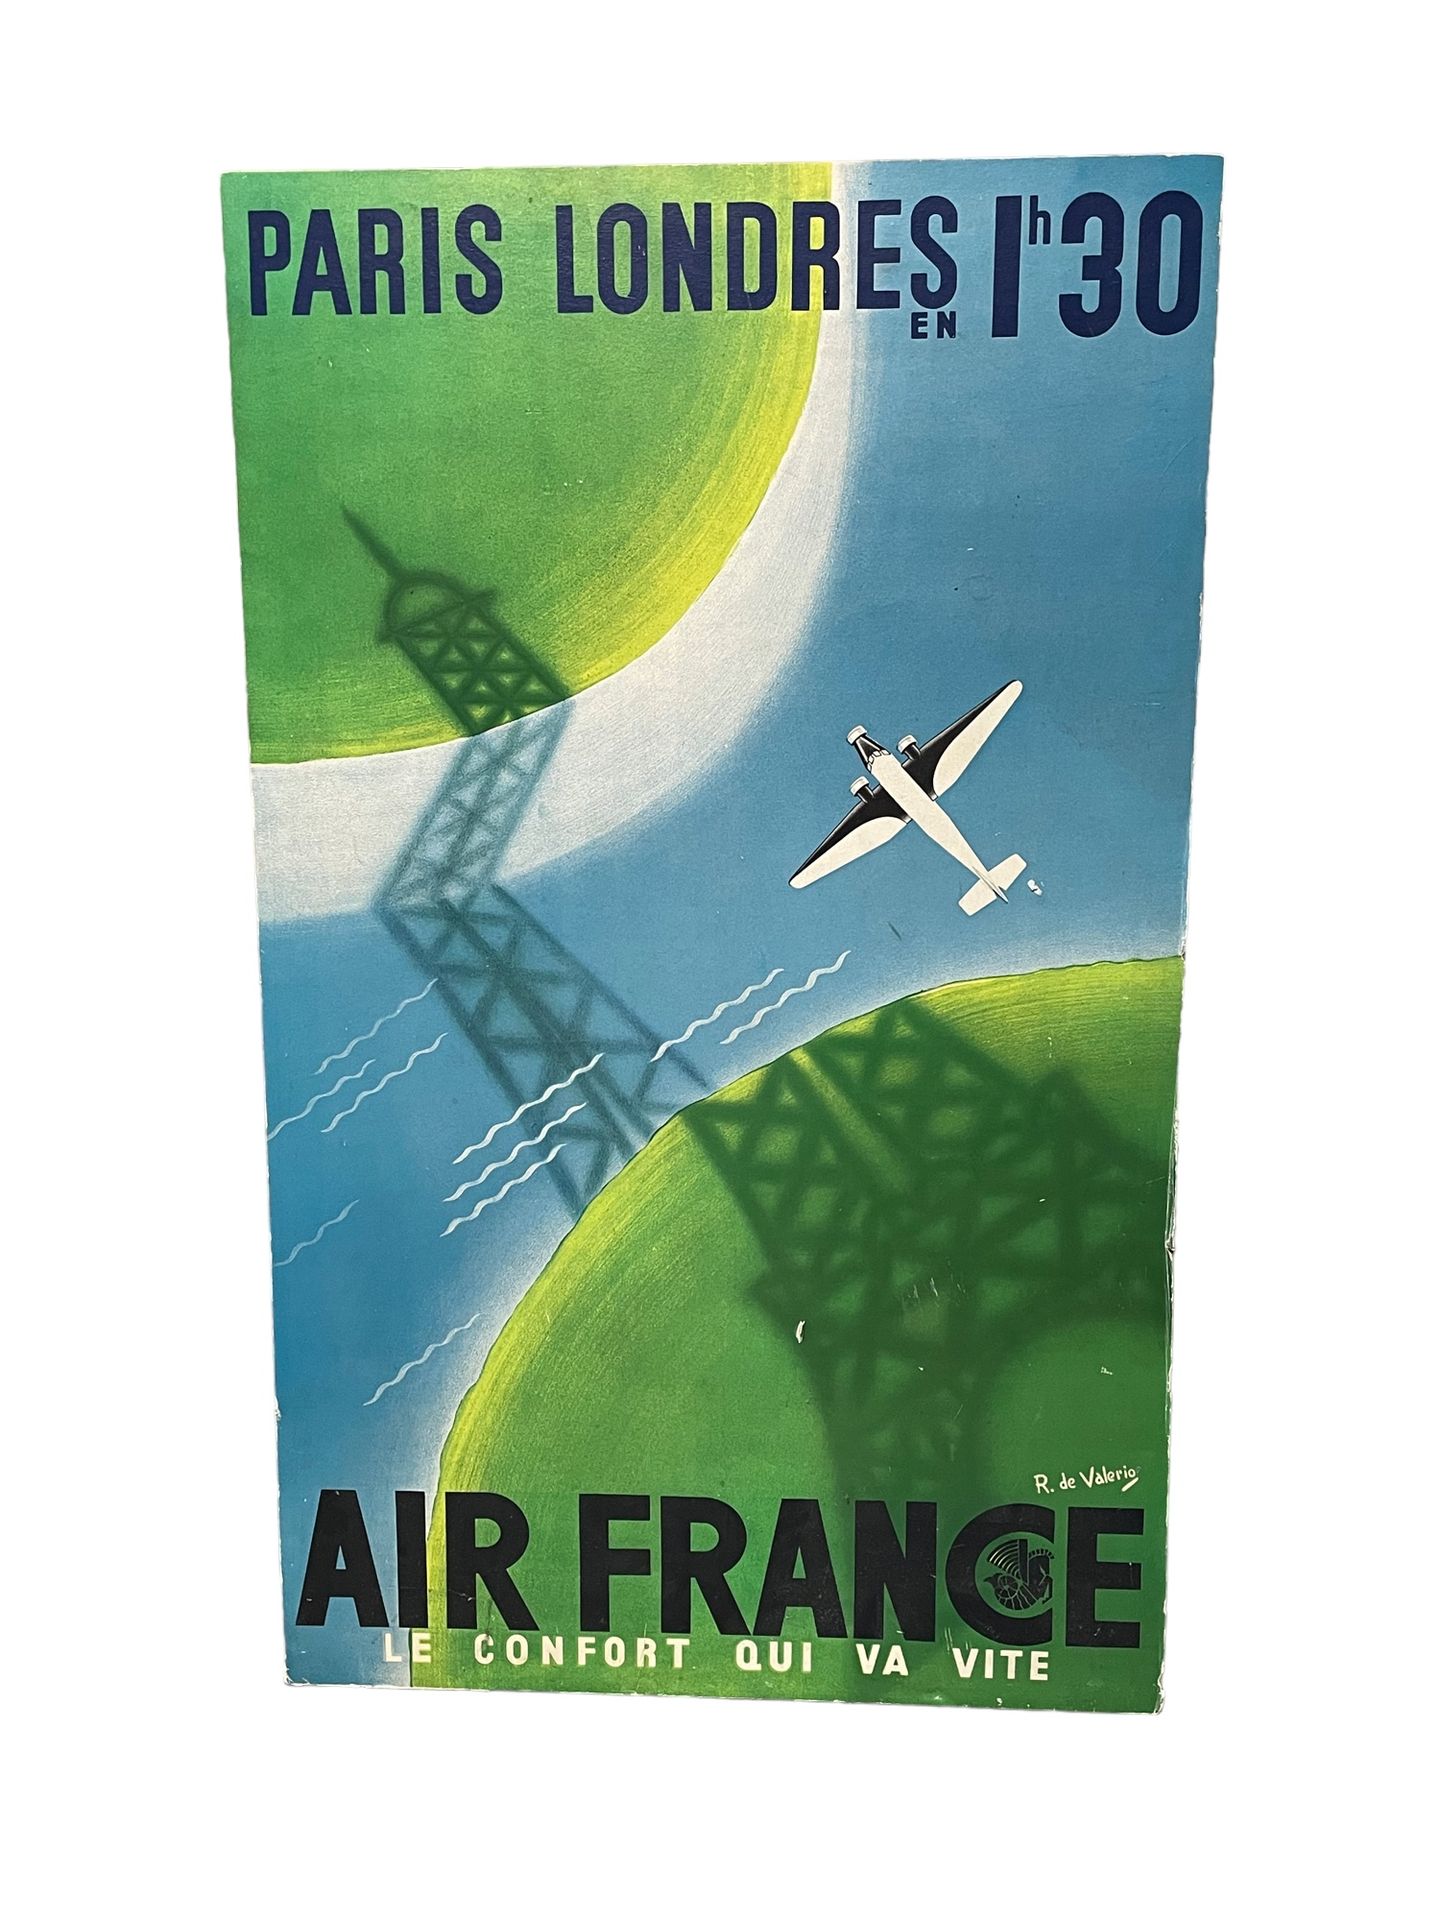 Null De Valerio
AIR FRANCE Paris Londres
Affiche contrecollé sur panneau. 
96,5 &hellip;